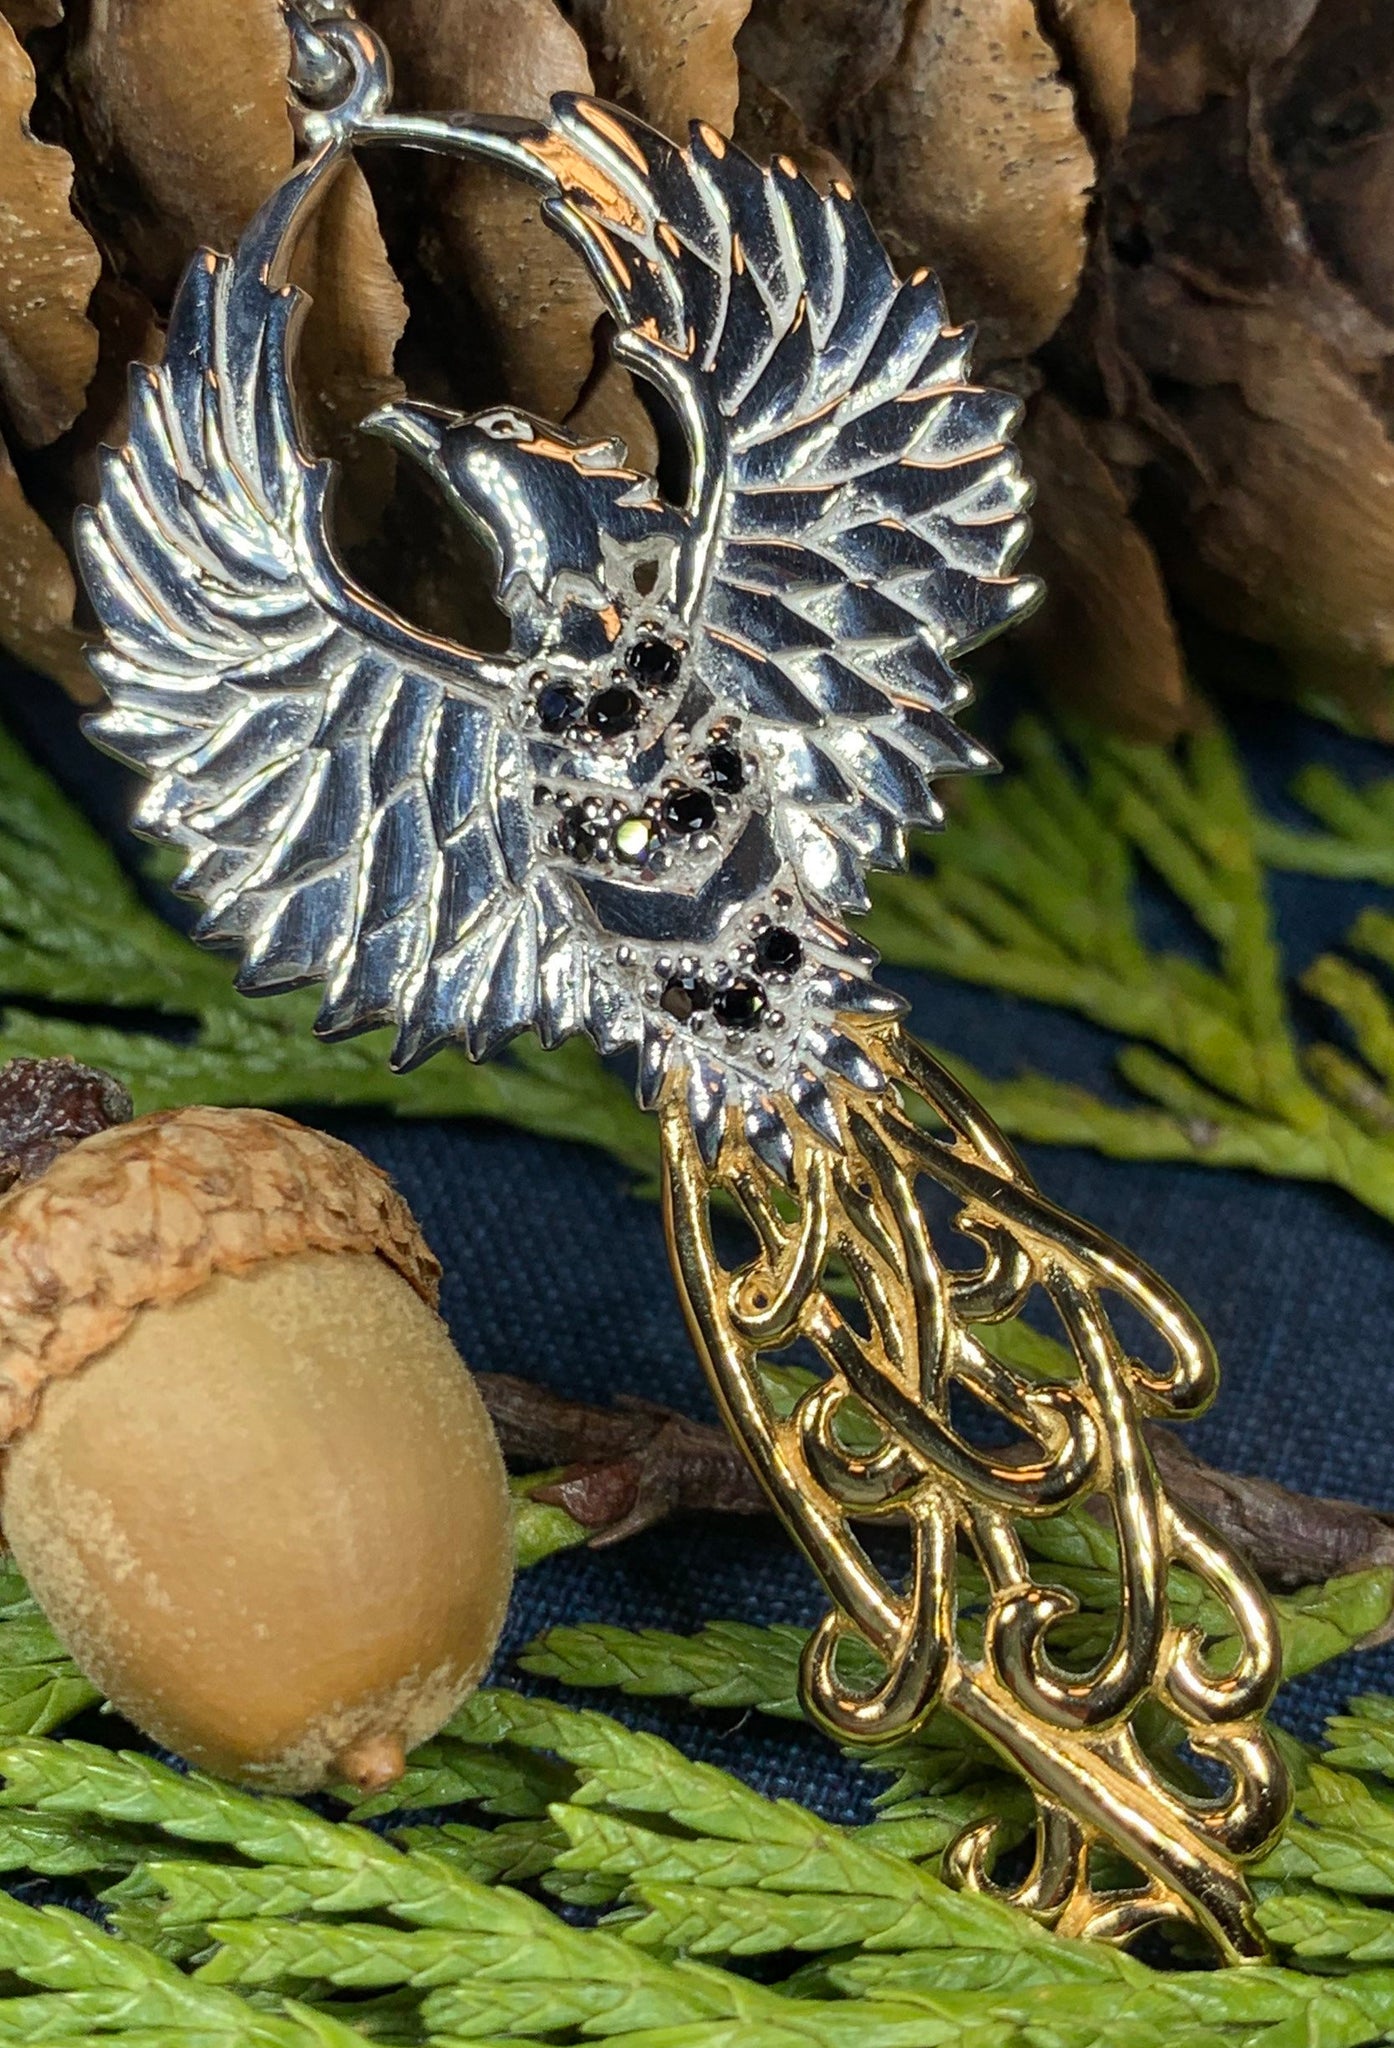 Caduceus Phoenix Necklace – Celtic Crystal Design Jewelry